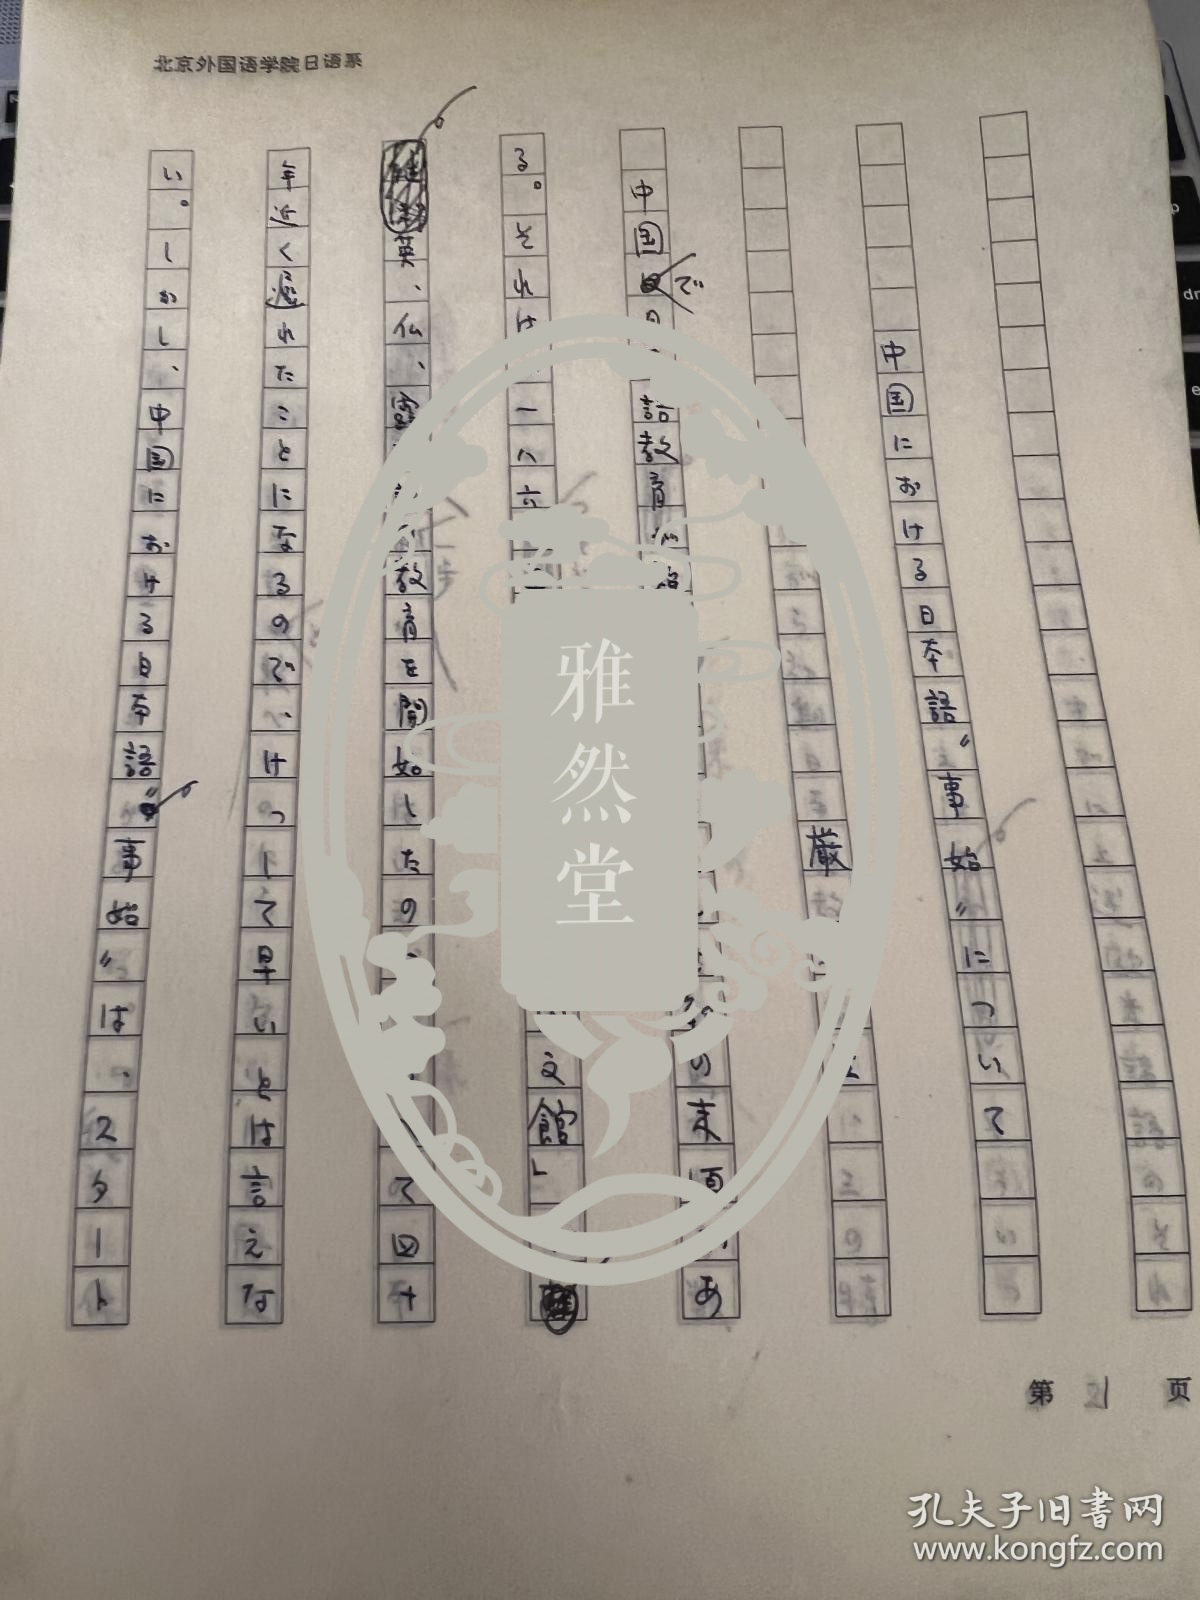 北京外国语大学教授严安生手稿《中国...日本语事始》61页